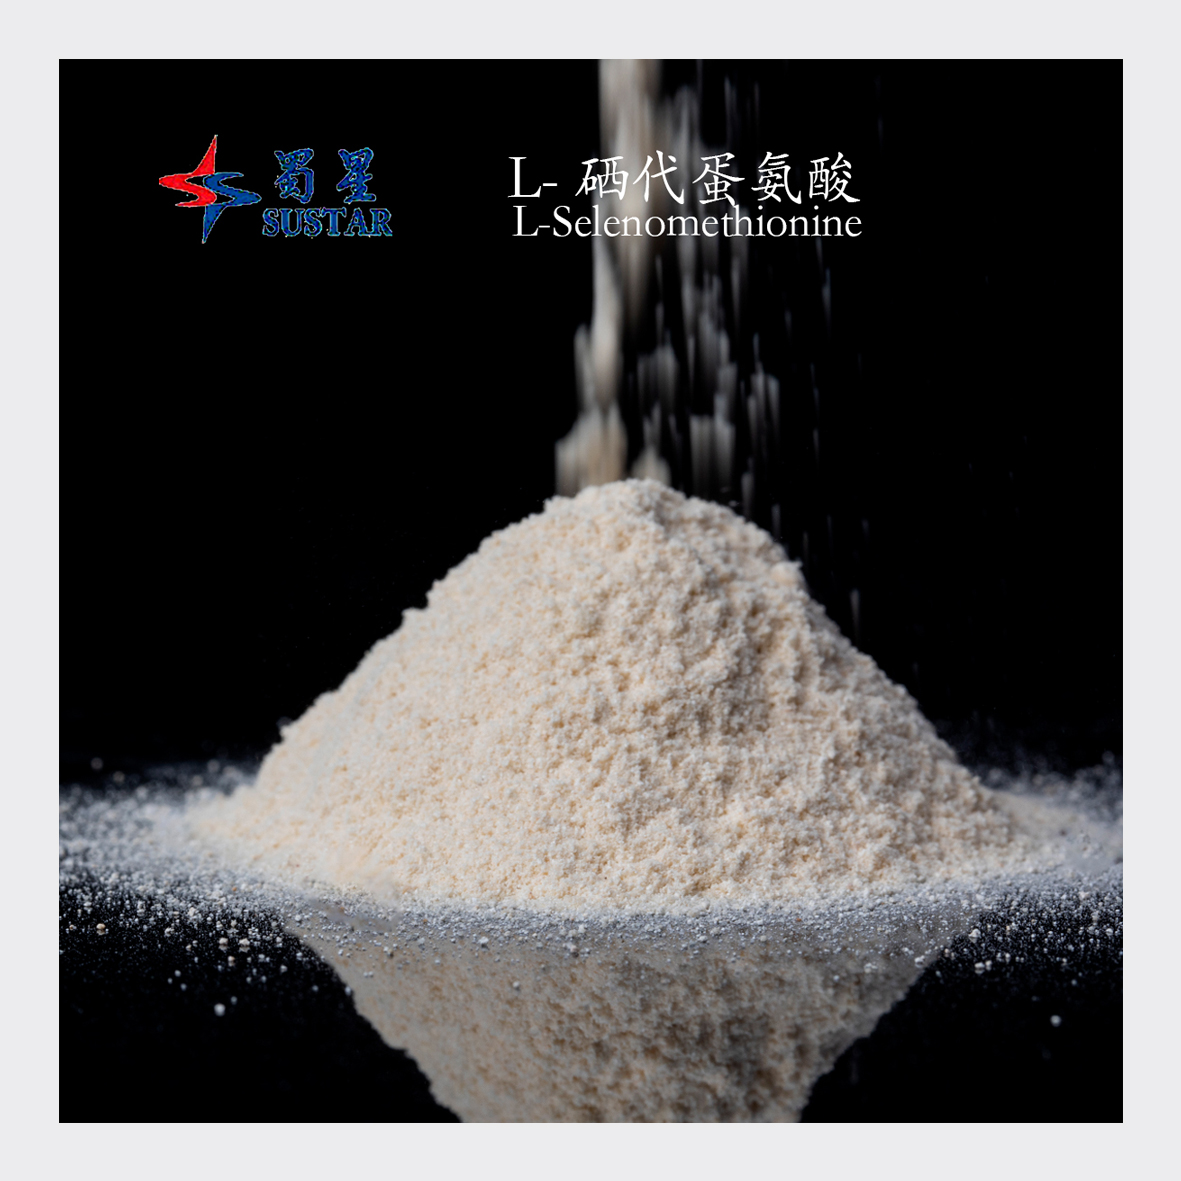 L-selenomethionine gri blan poud bèt manje aditif